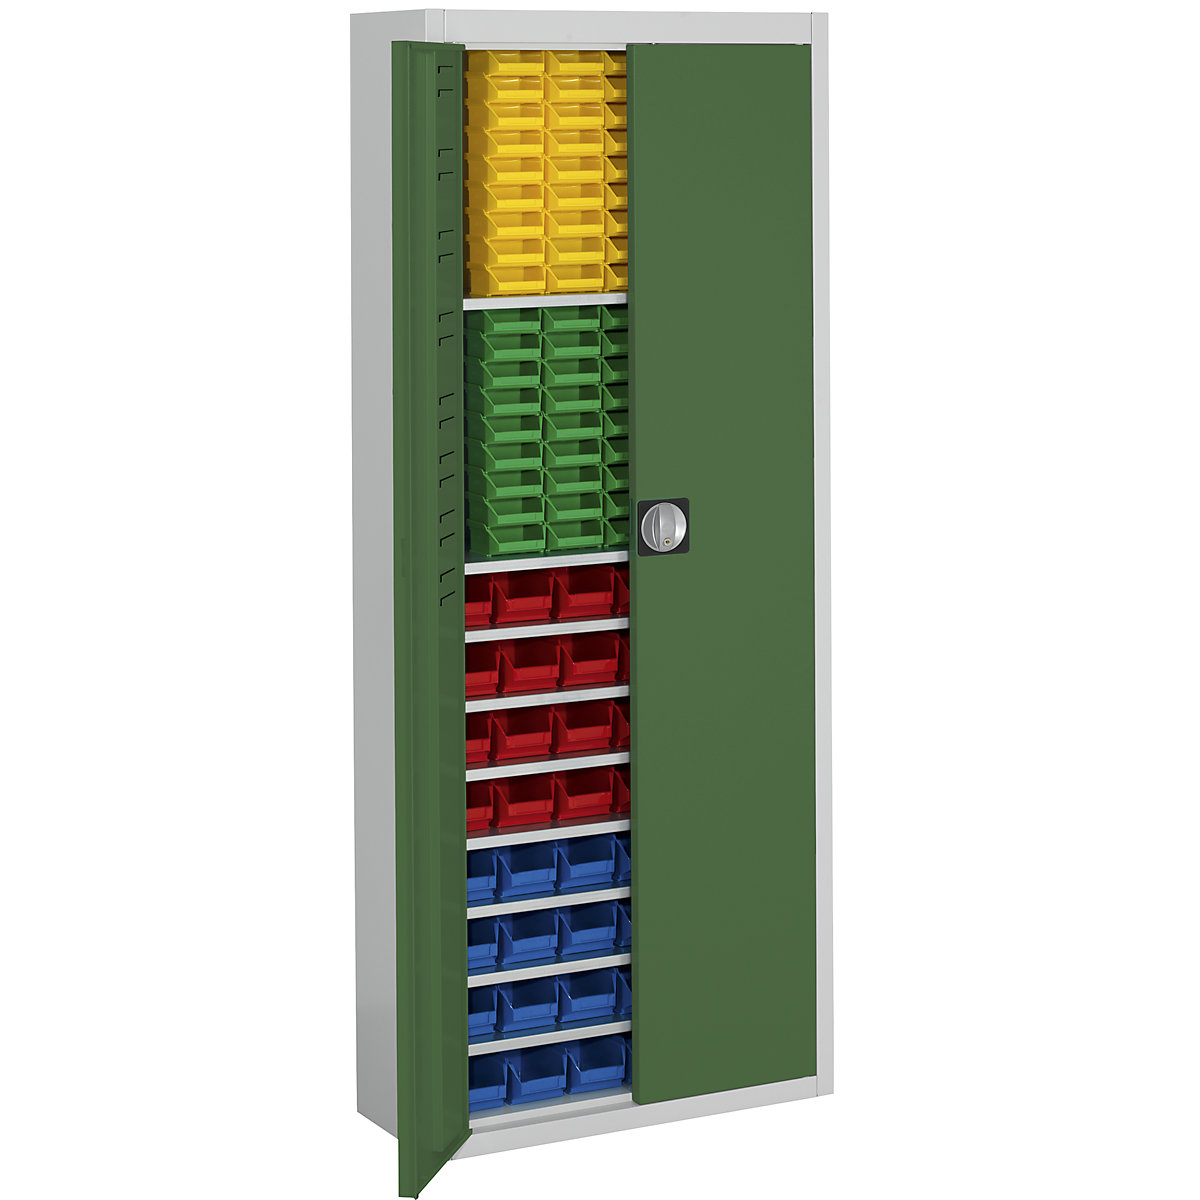 Skladišni ormar s otvorenim skladišnim kutijama – mauser, VxŠxD 1740 x 680 x 280 mm, u dvije boje, korpus u sivoj boji, vrata u zelenoj boji, 138 kutija-11